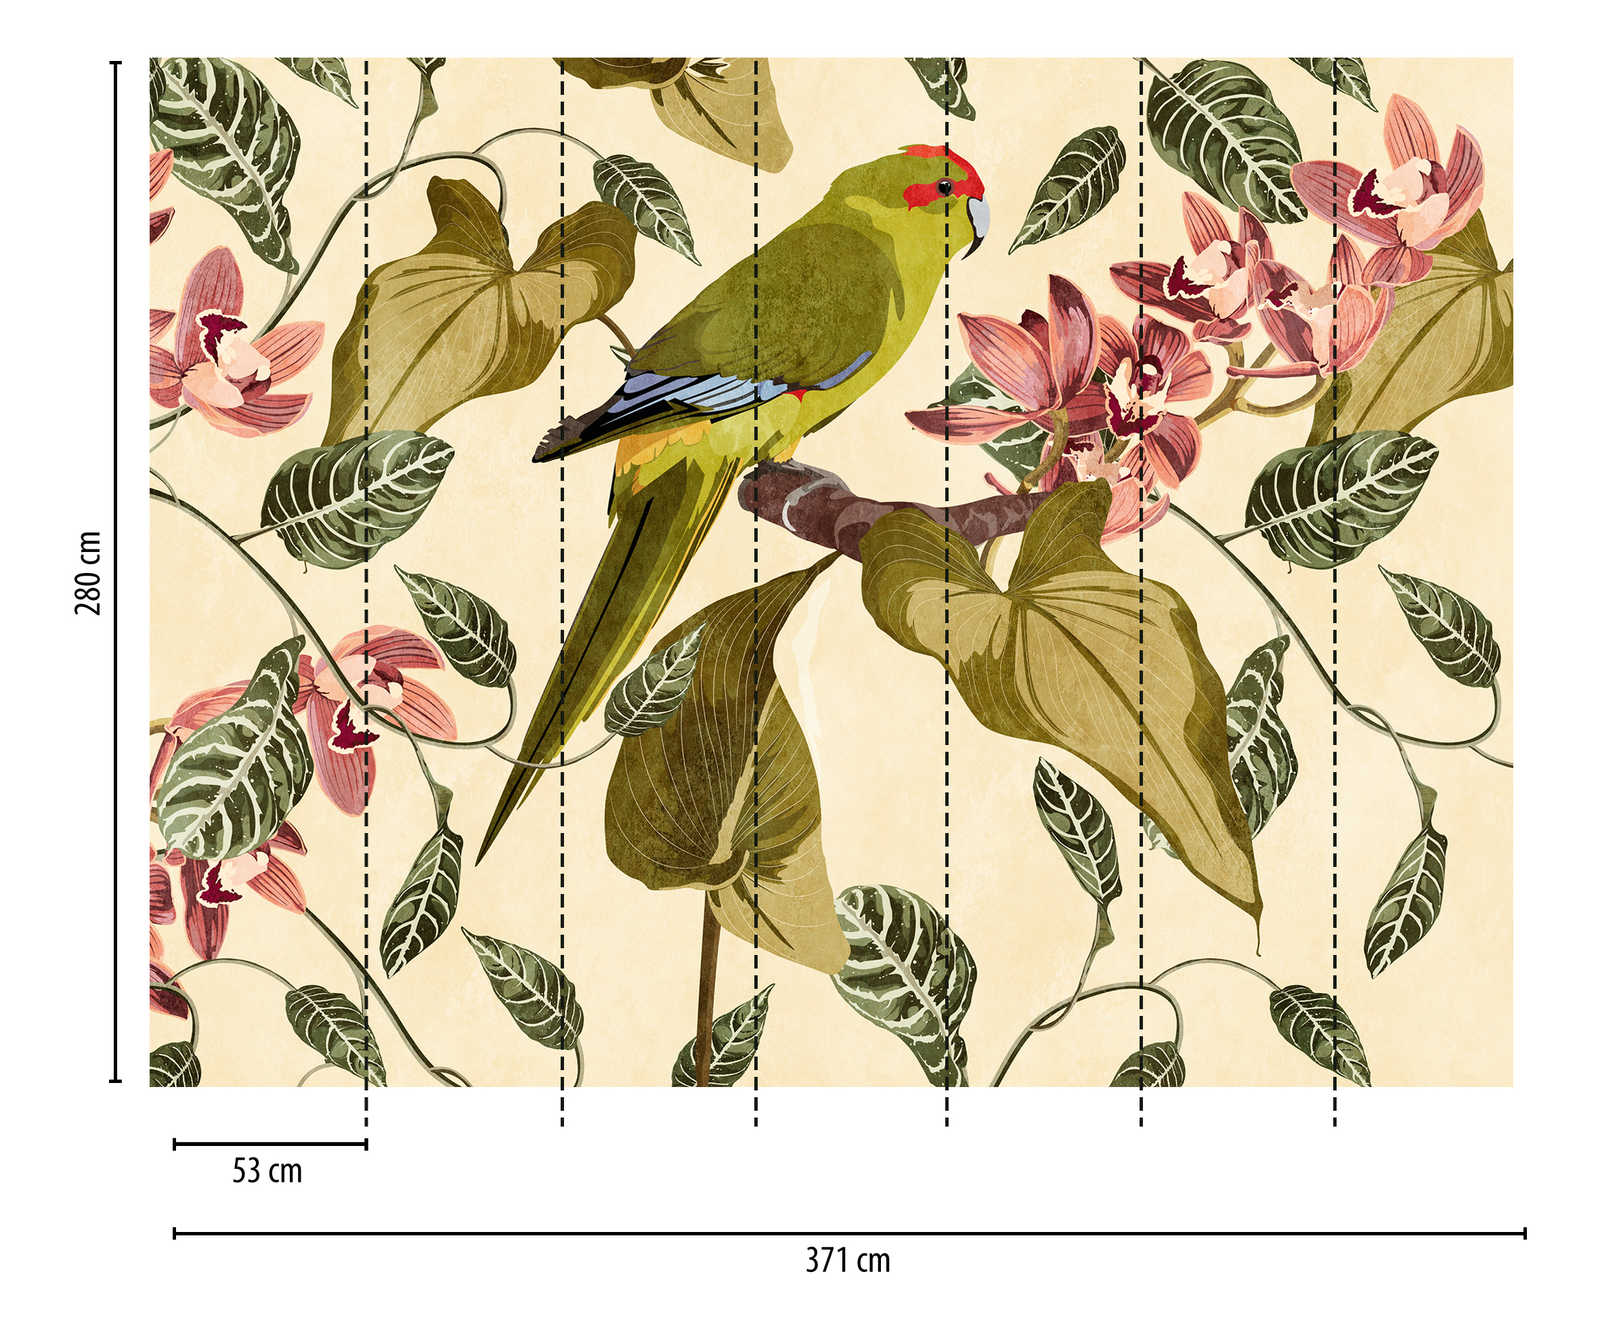             Wallpaper novelty - motif wallpaper parrot & orchids art print
        